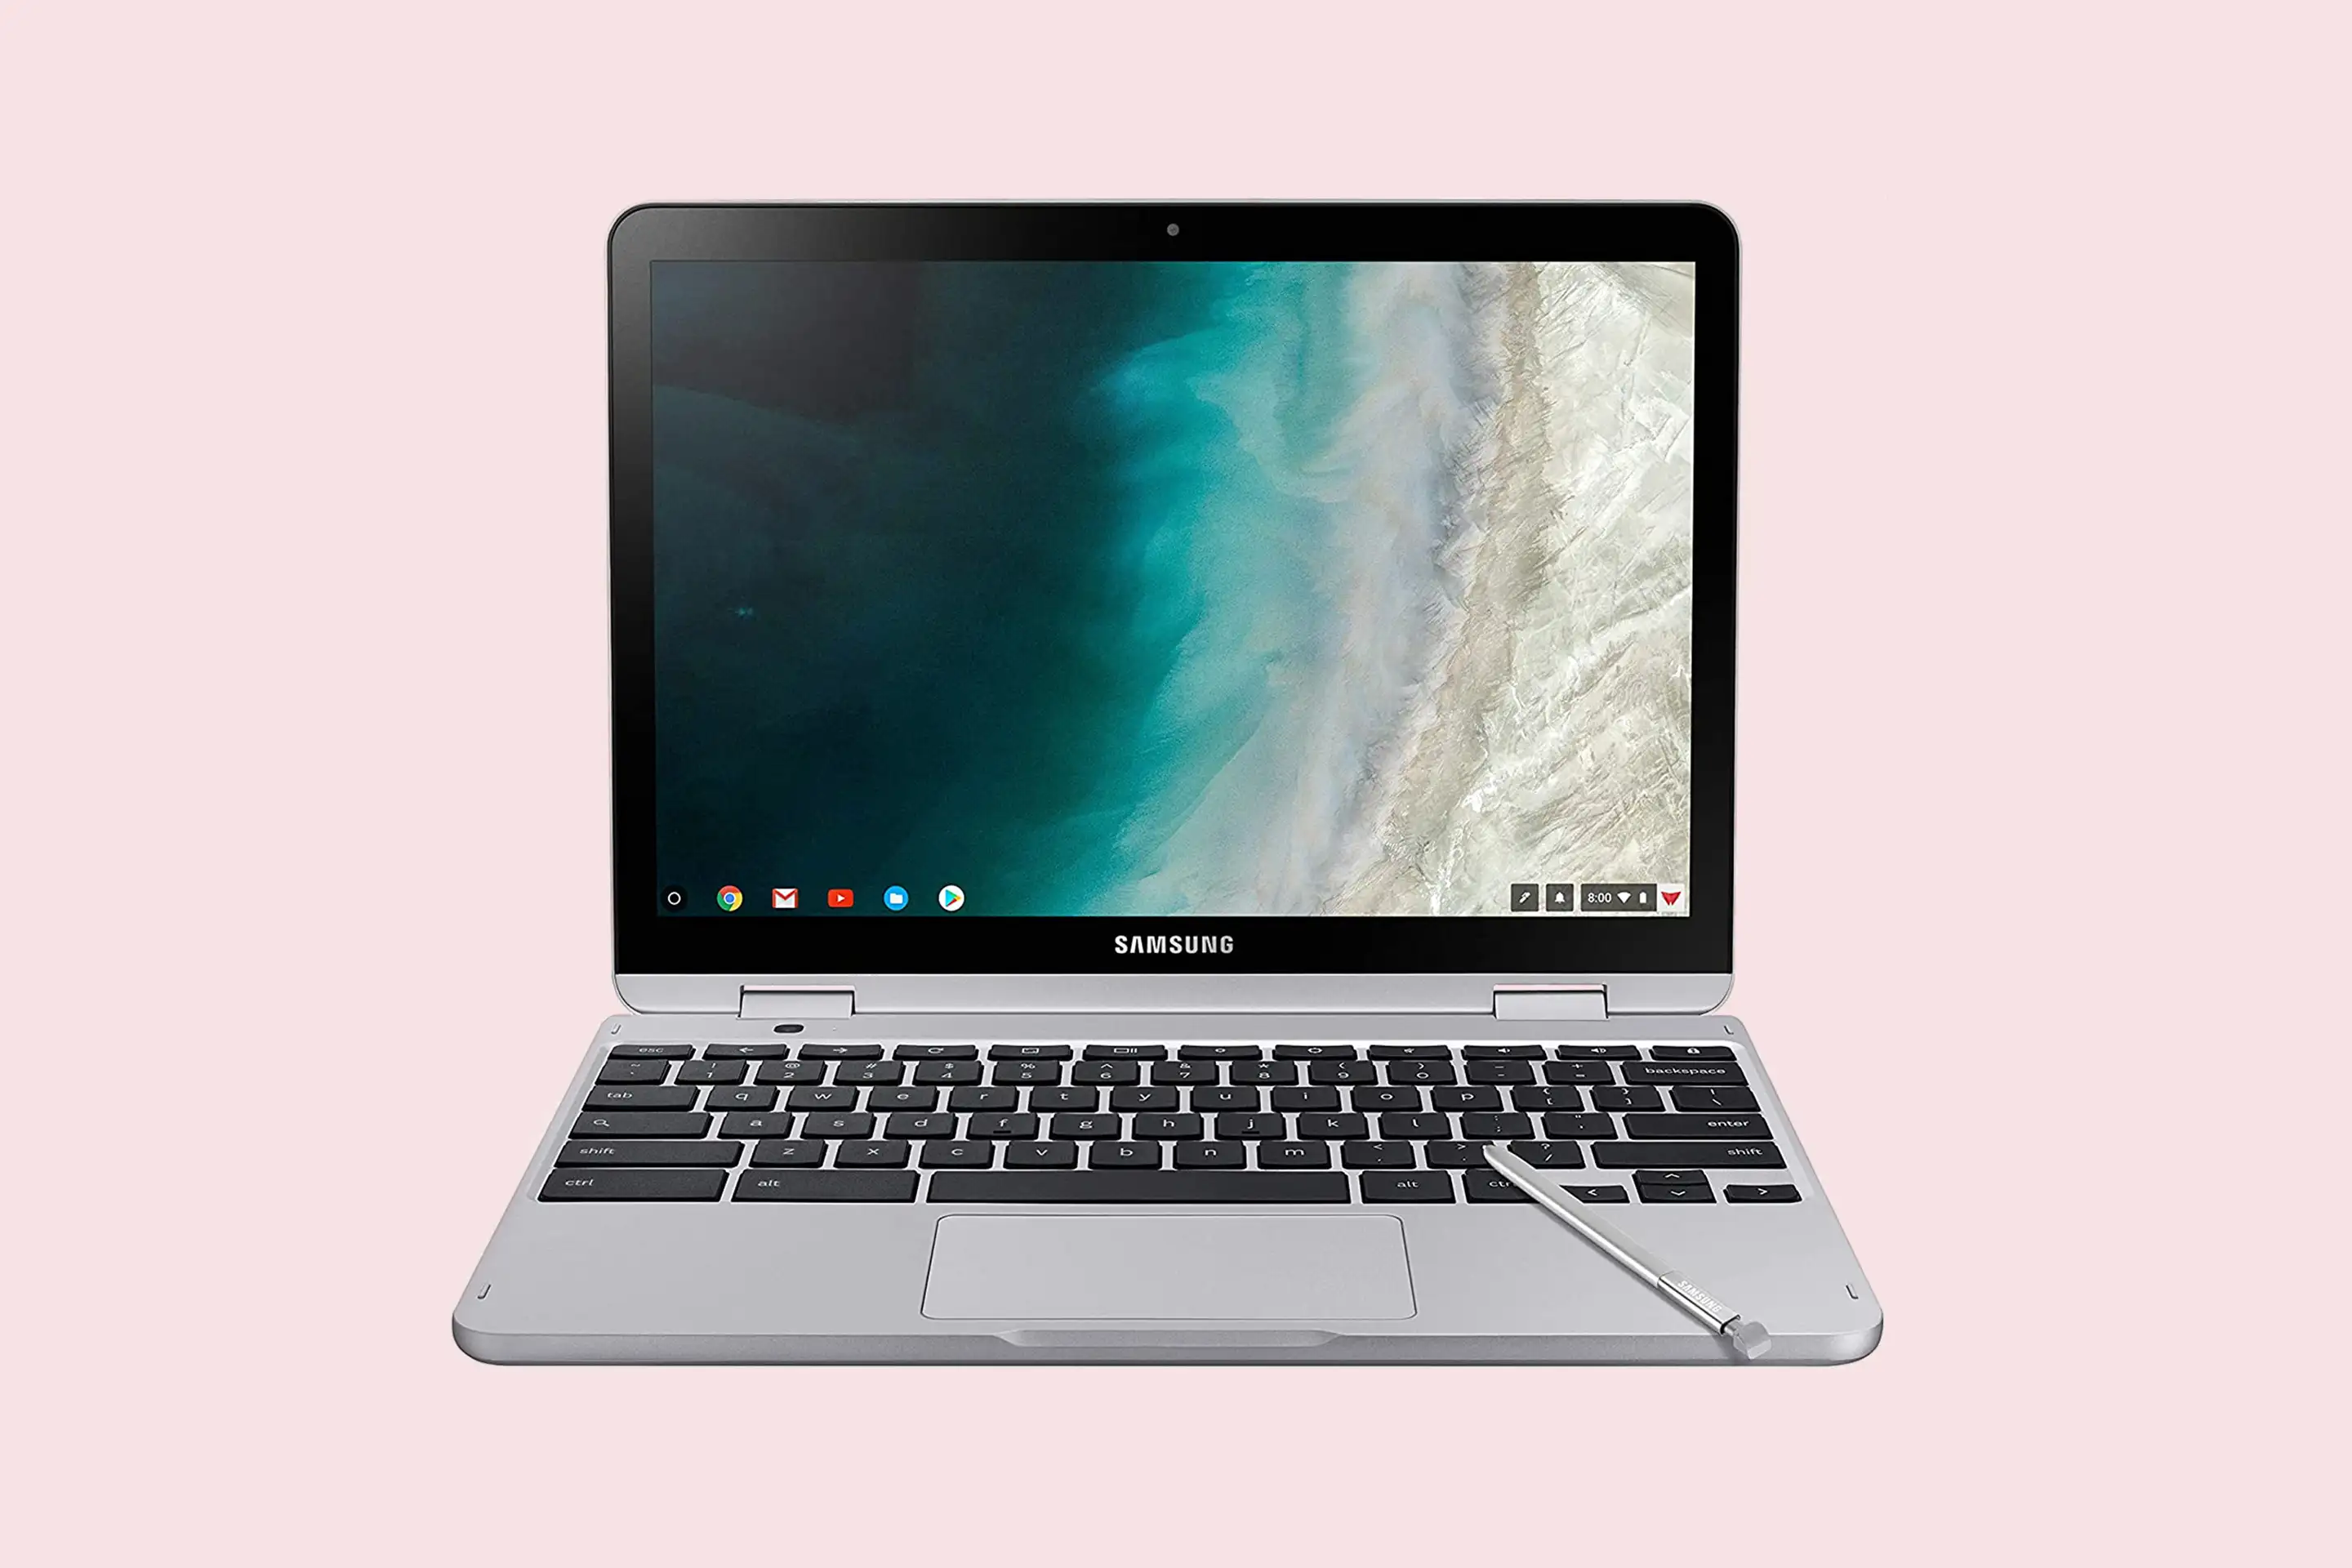 Samsung Chromebook Plus V2 2-in-1 Laptop